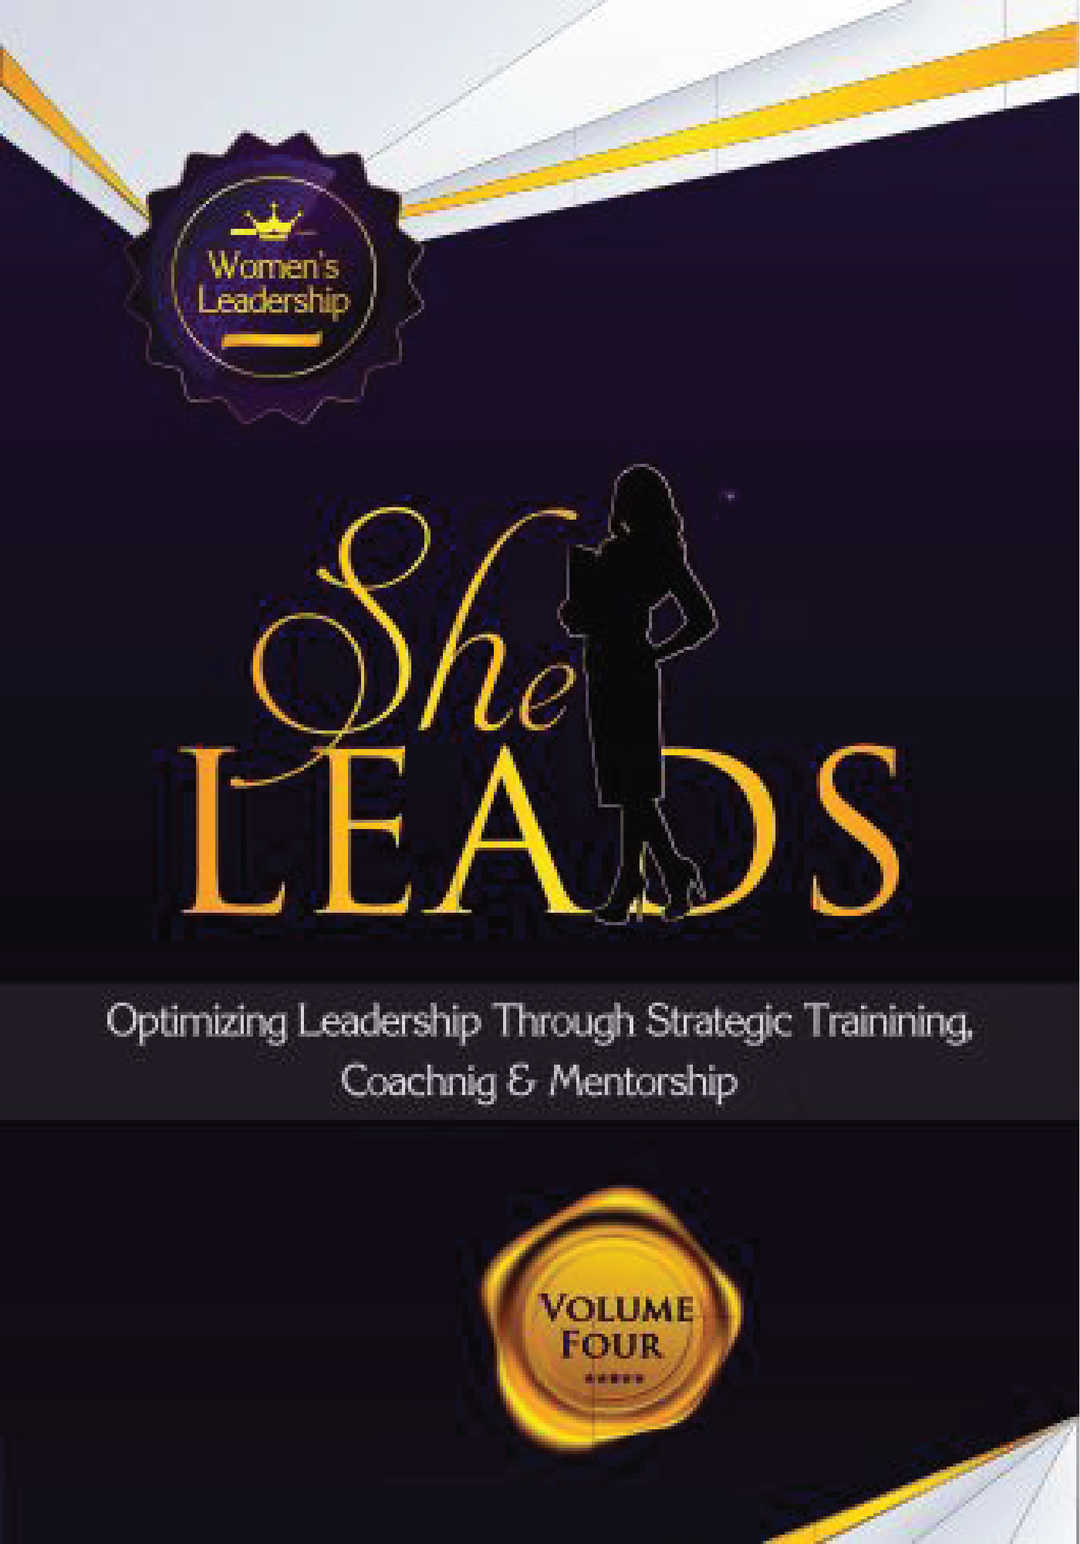 SheLeads: Optimizing Leadership Through Strategic Training, Coaching & Mentorship